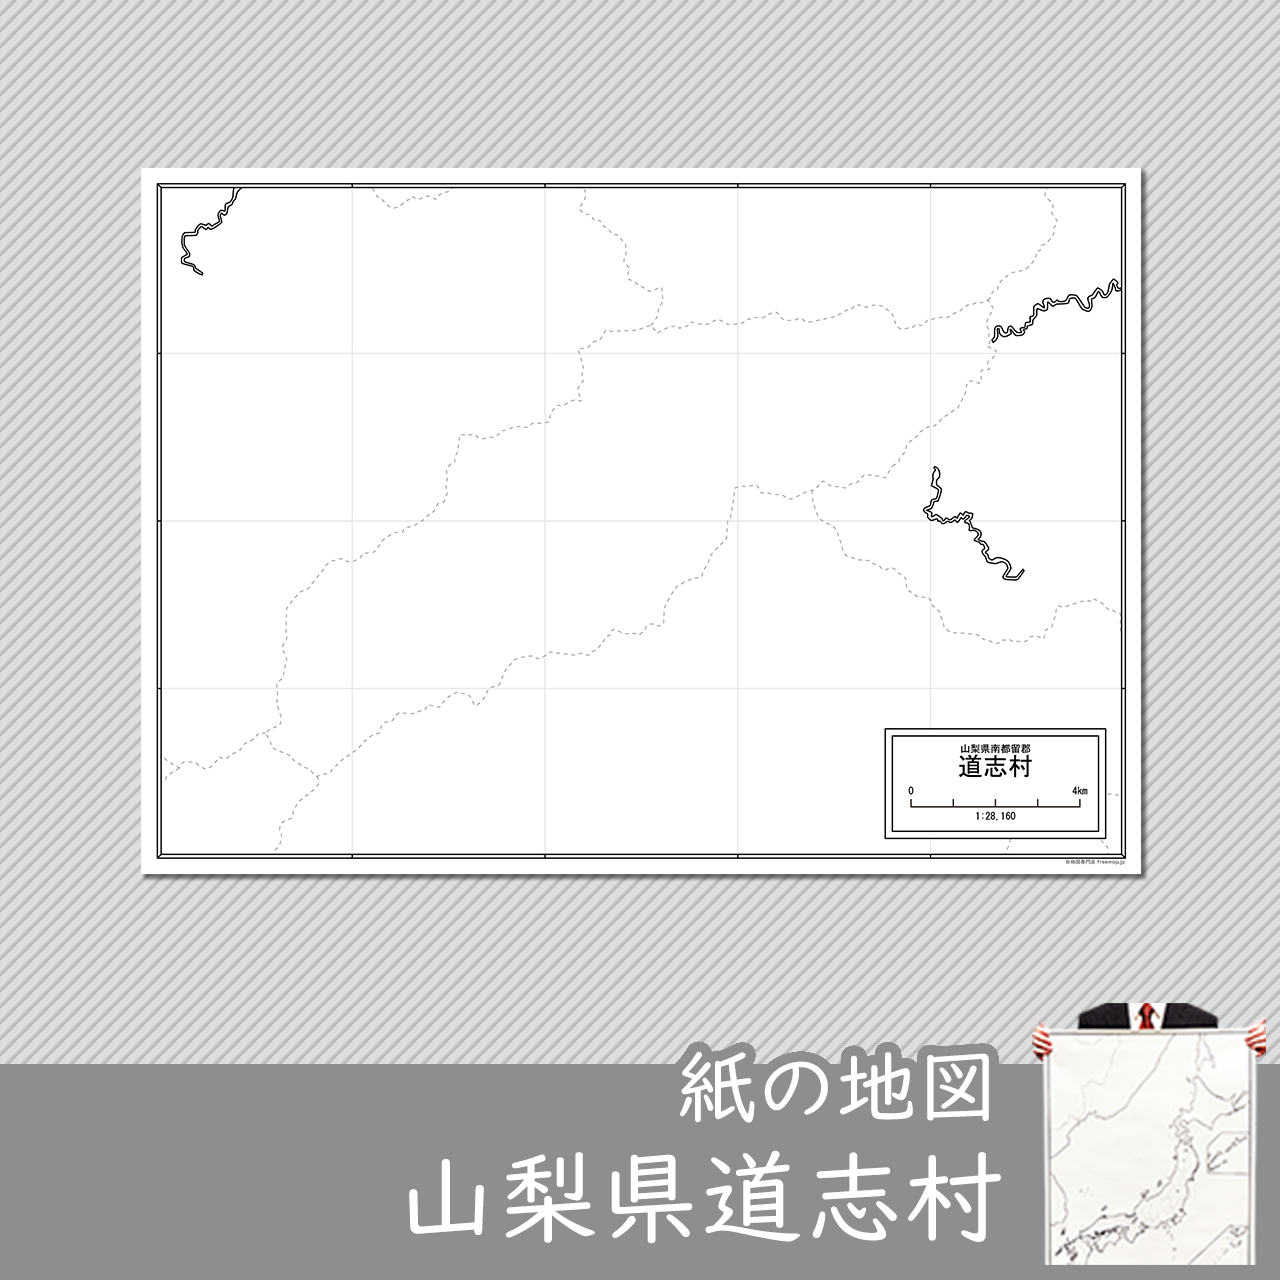 道志村の紙の白地図